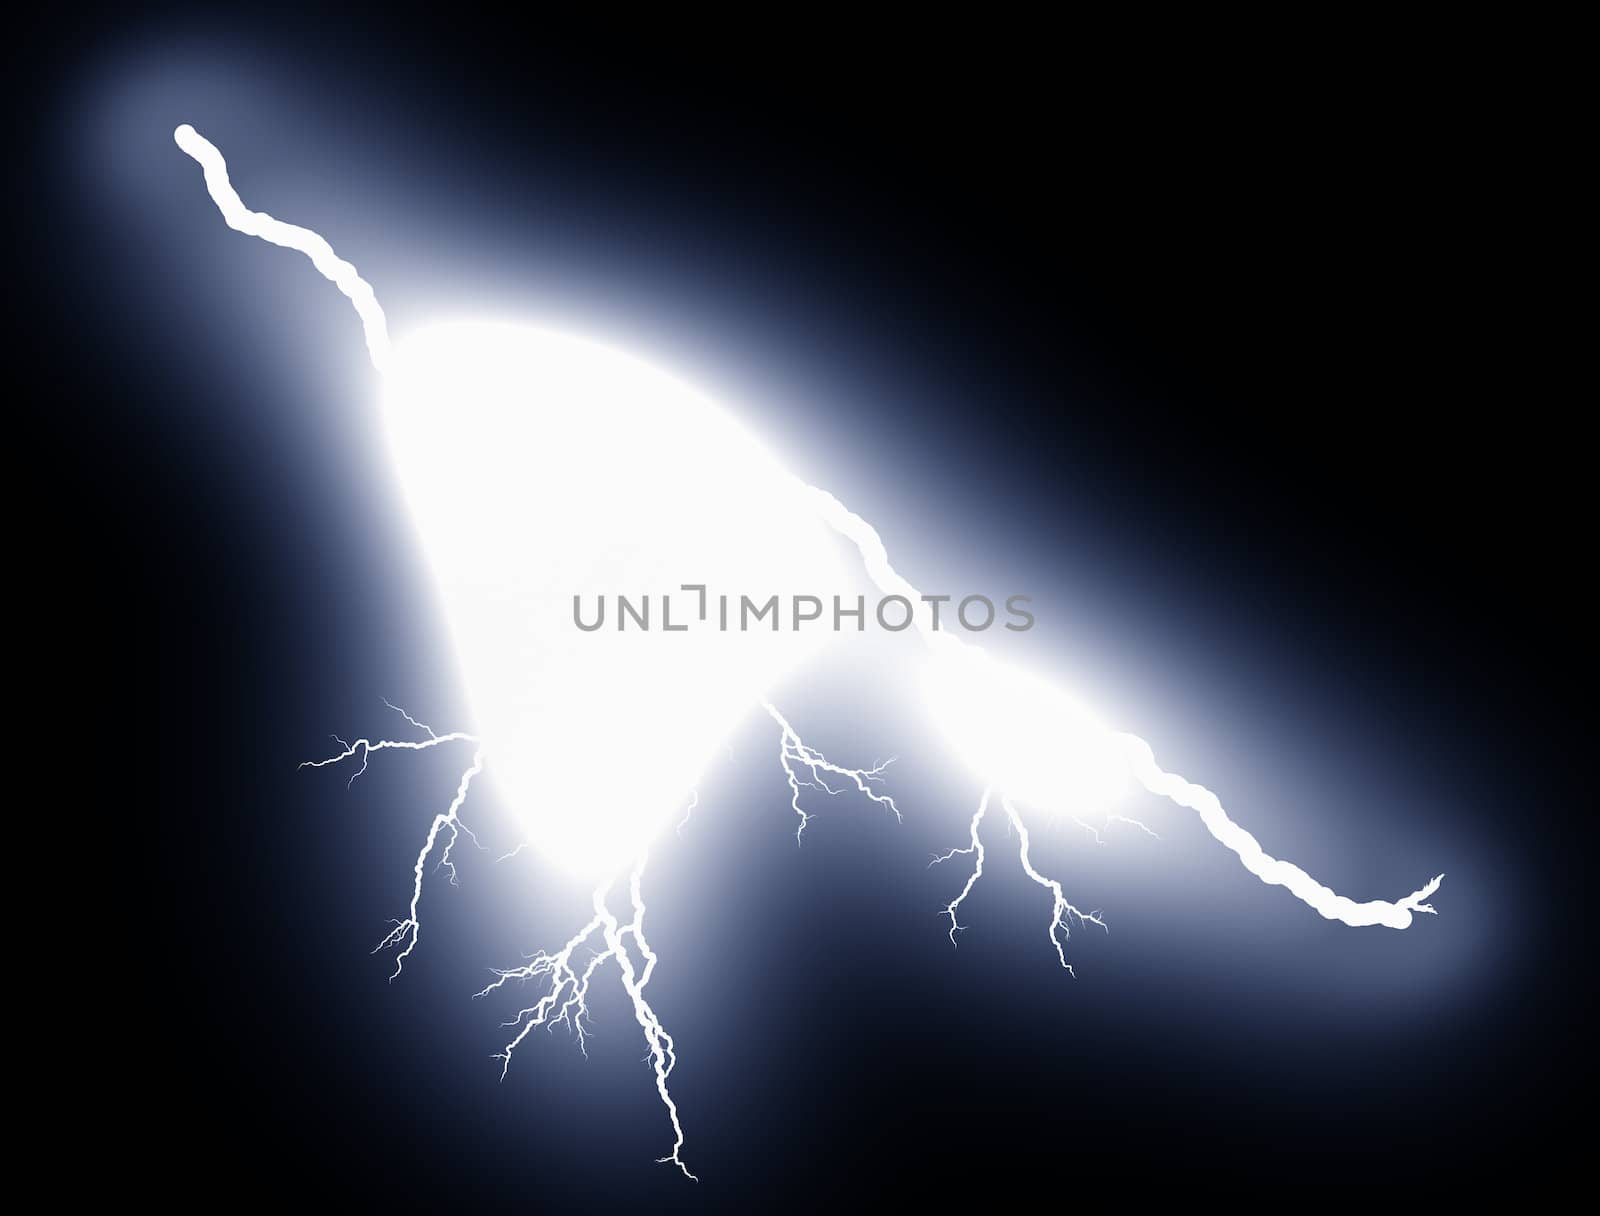 Lightning bolt at night